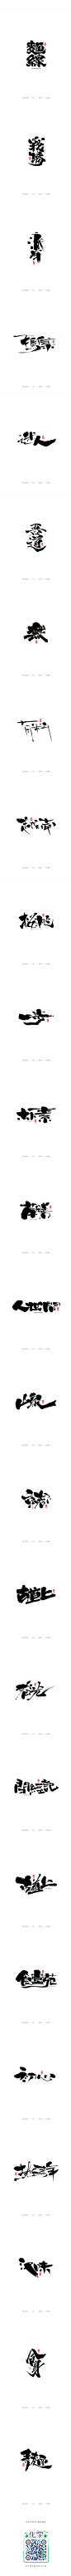 八月手写书法字体-字体传奇网-中国首个字体品牌设计师交流网